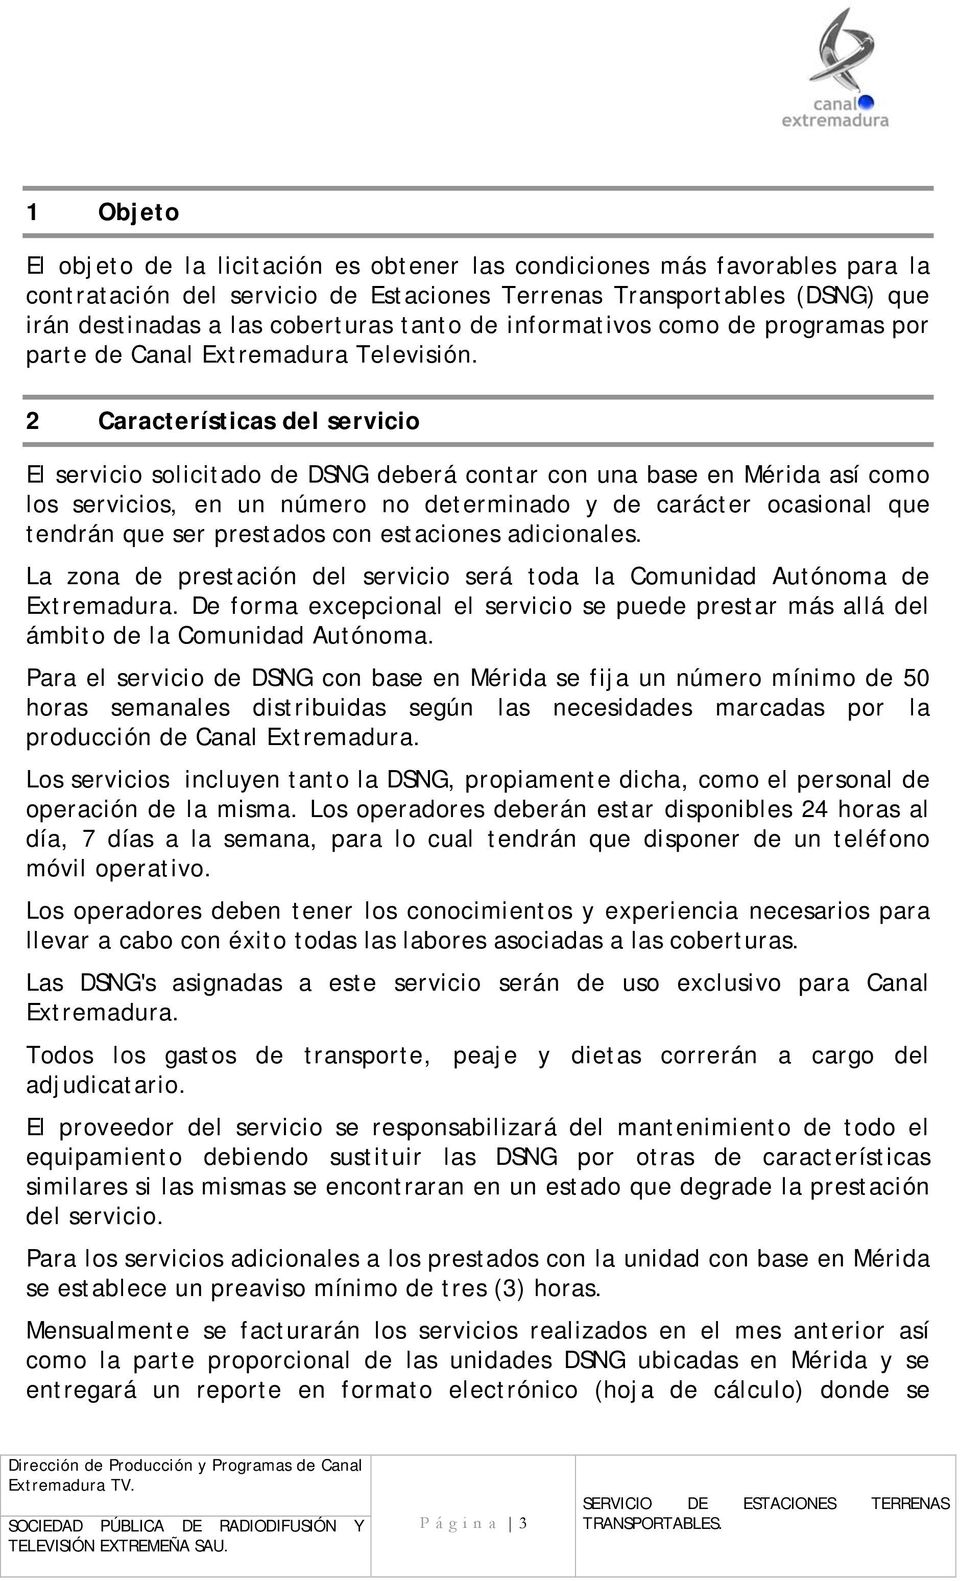 2 Características del servicio El servicio solicitado de DSNG deberá contar con una base en Mérida así como los servicios, en un número no determinado y de carácter ocasional que tendrán que ser